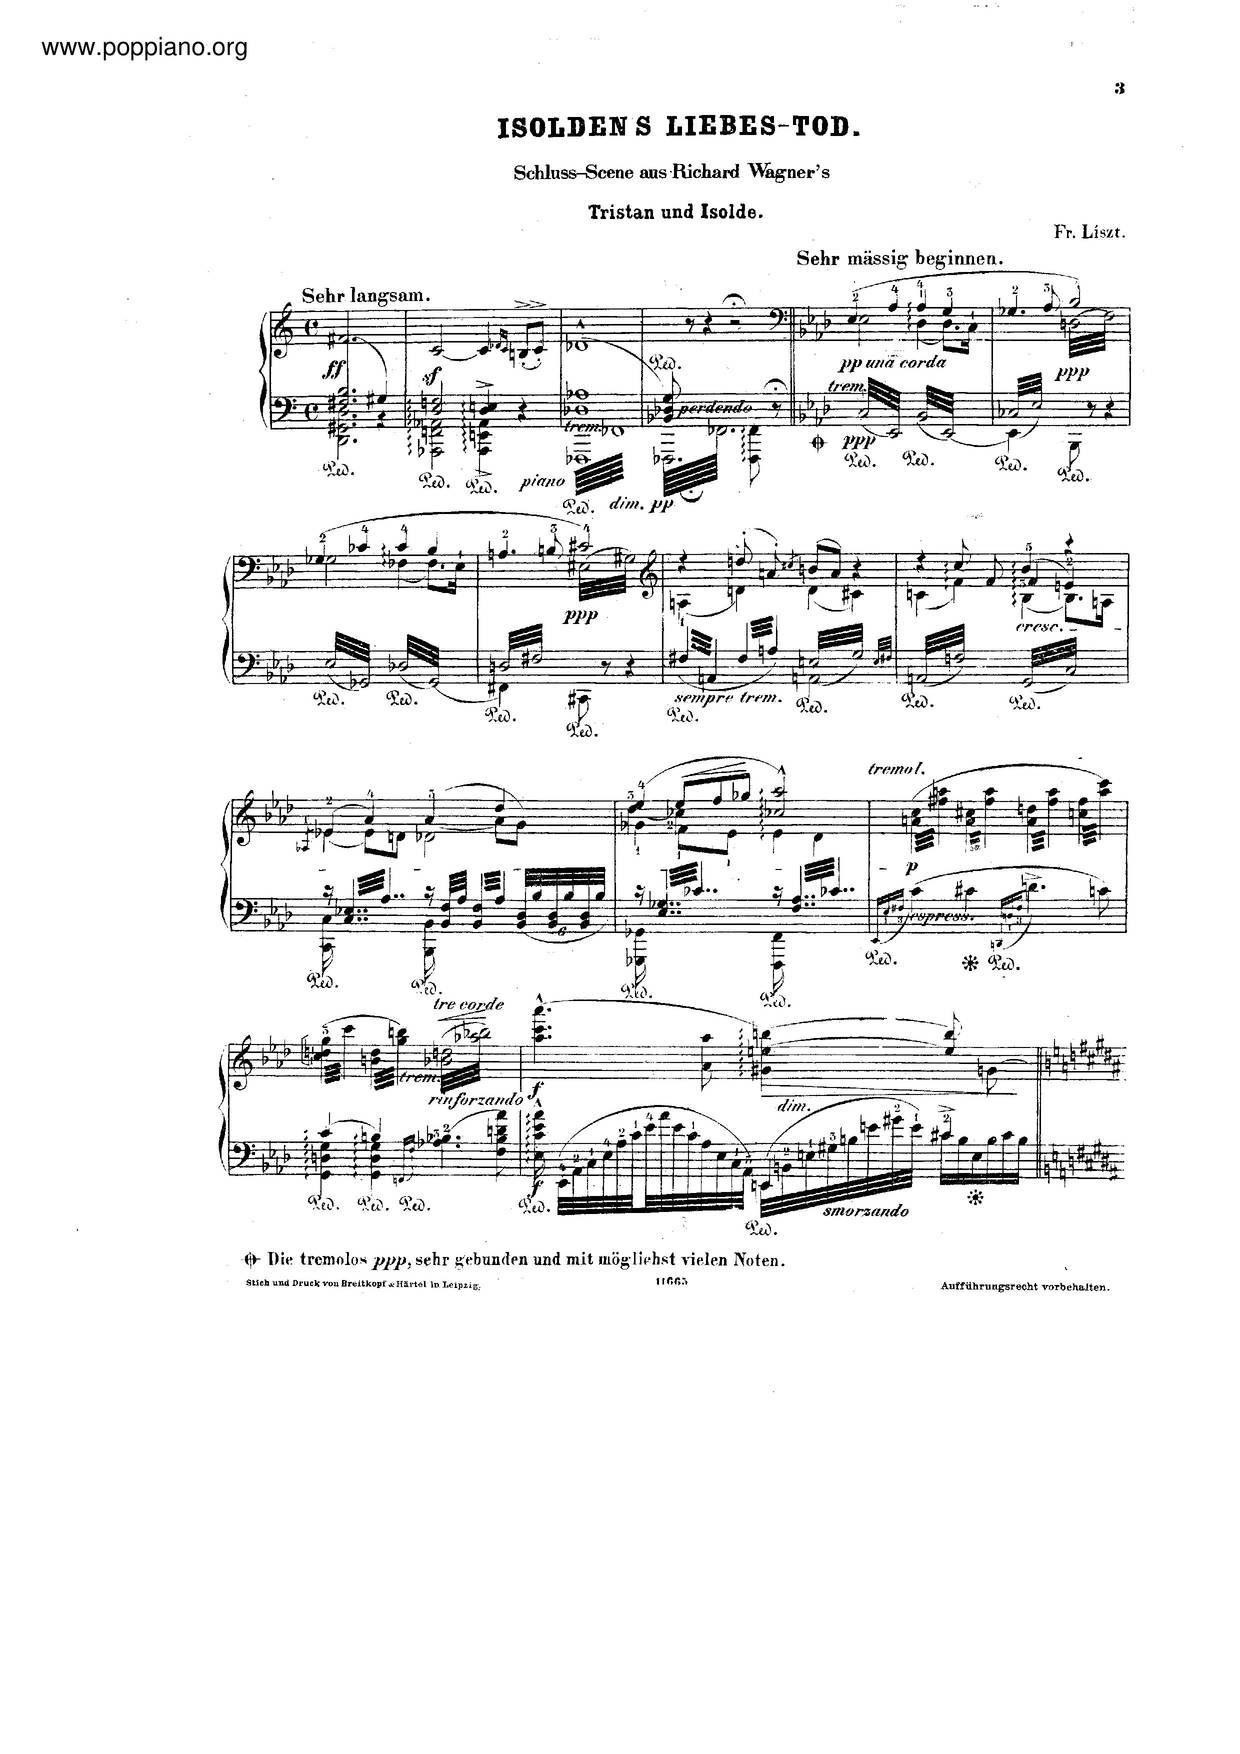 Tristan Und Isolde - Liebestod, S.447 Score